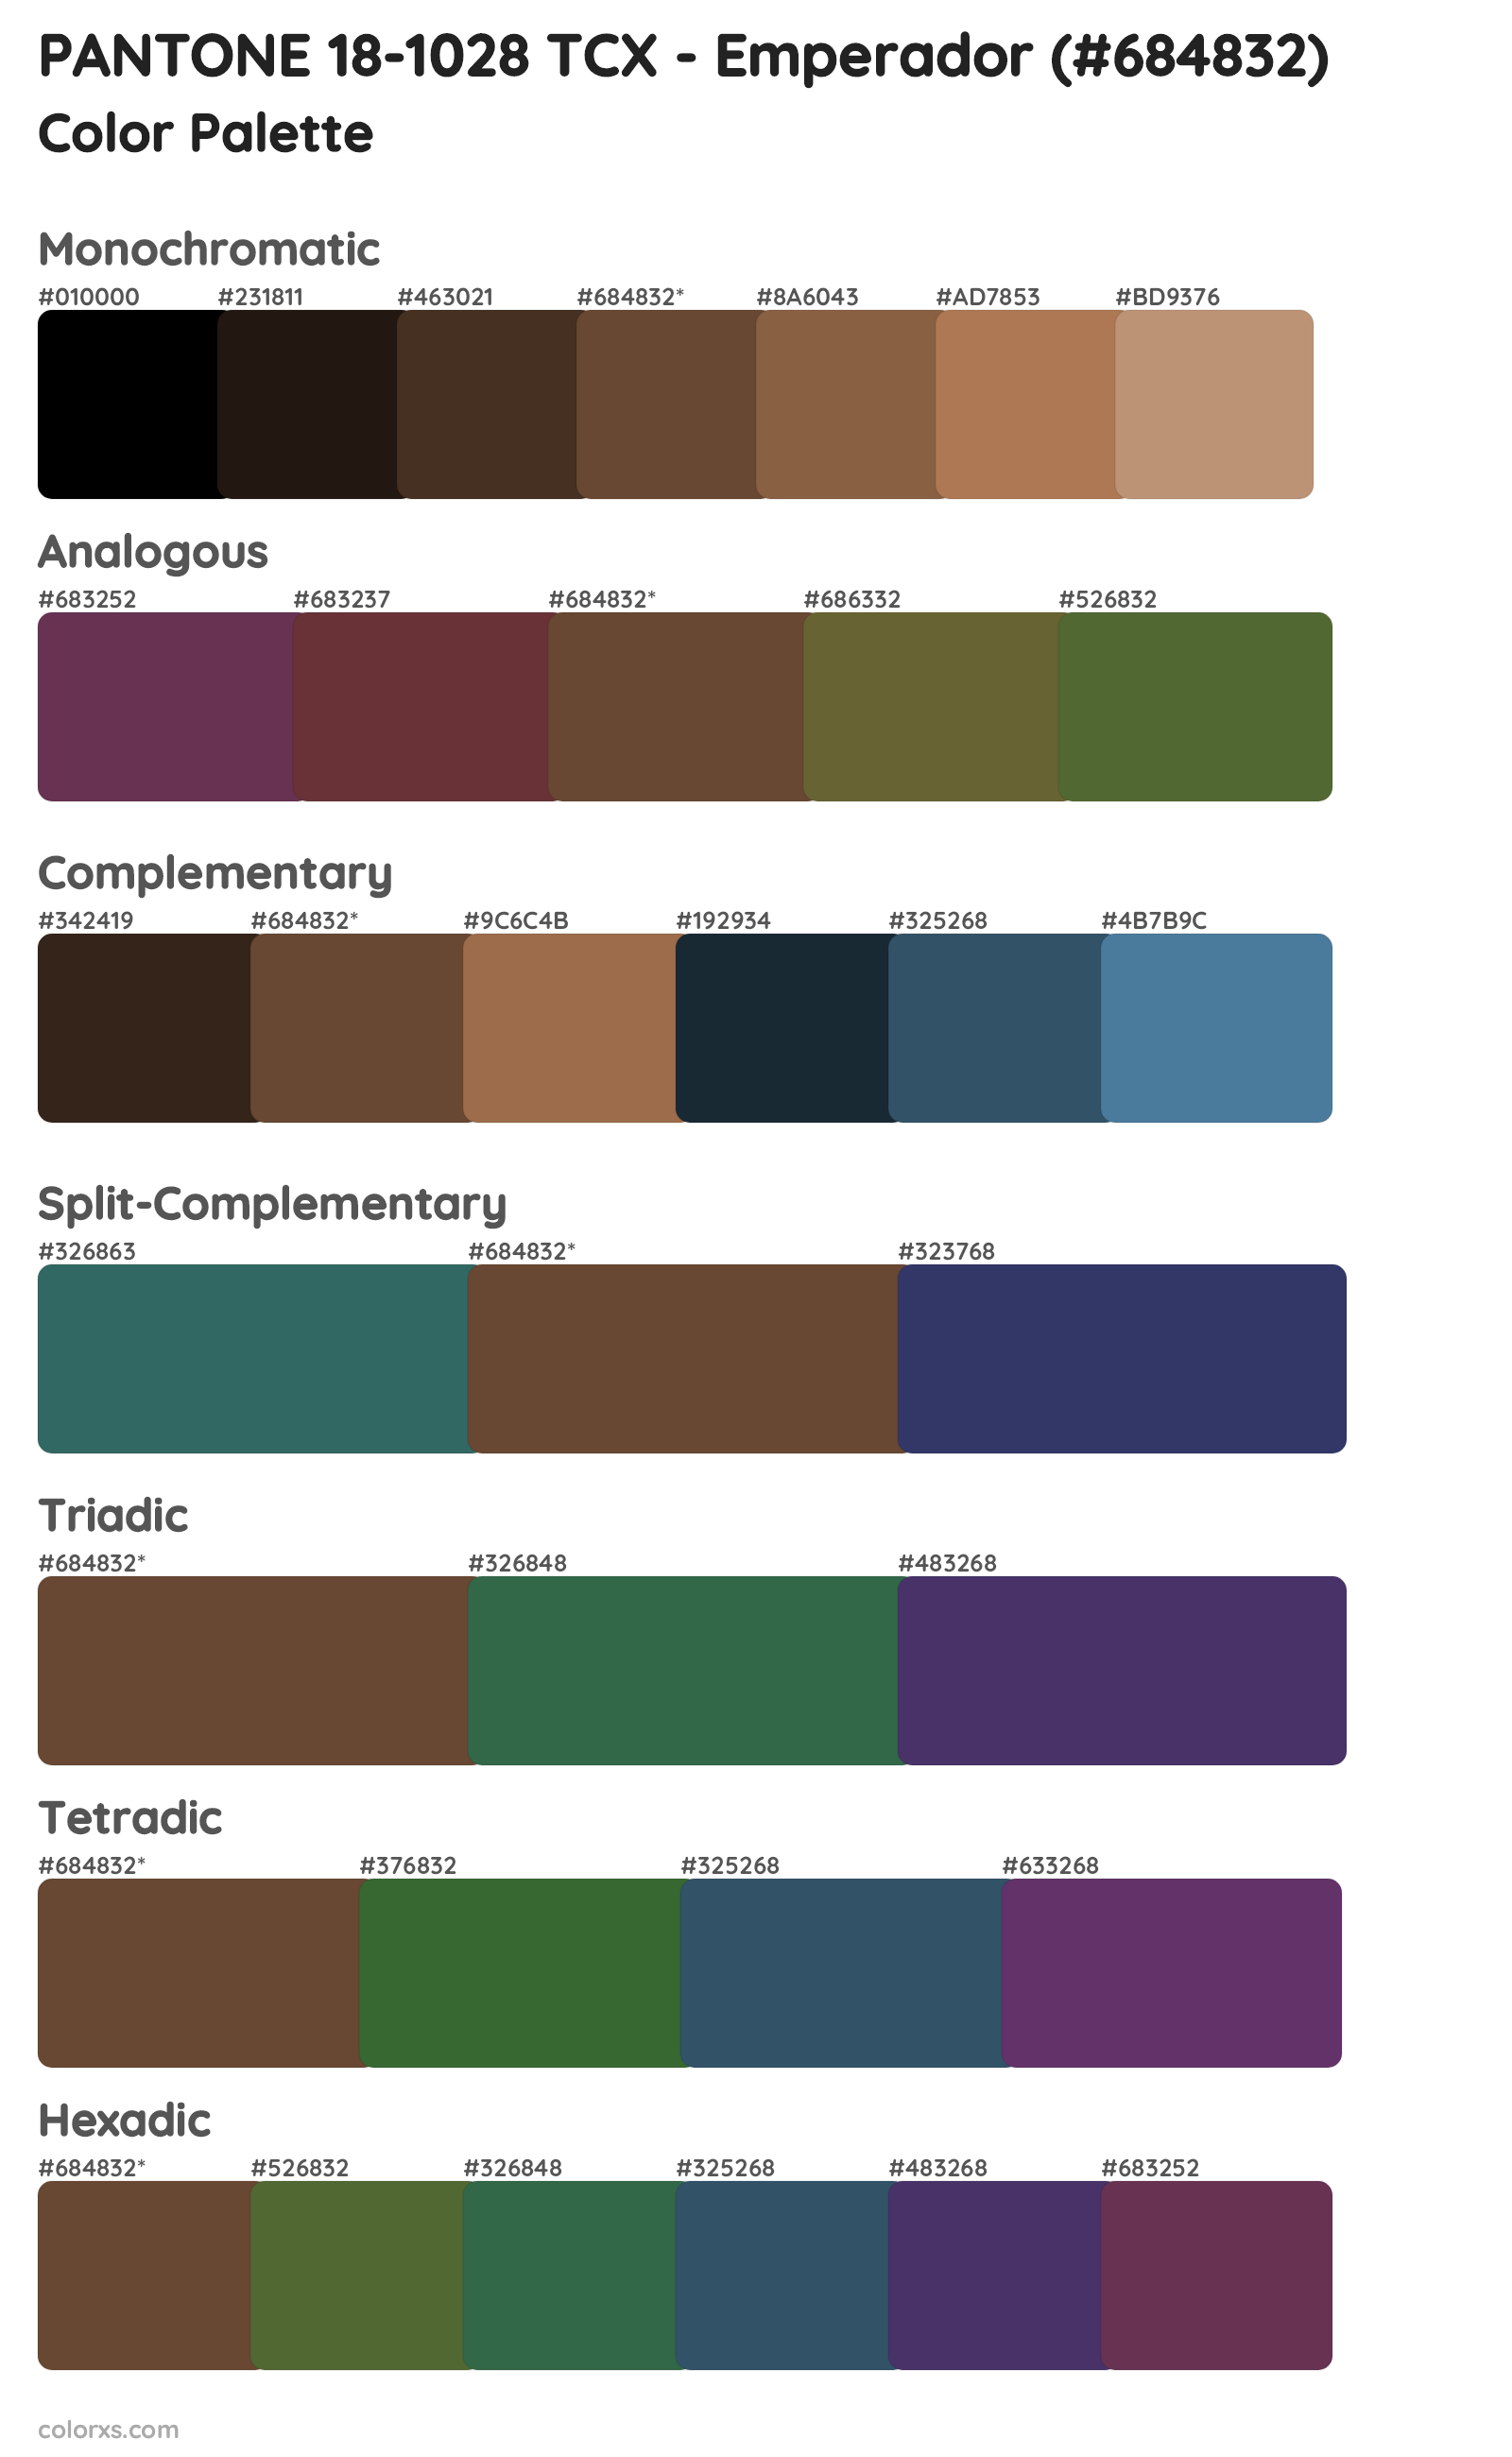 PANTONE 18-1028 TCX - Emperador Color Scheme Palettes